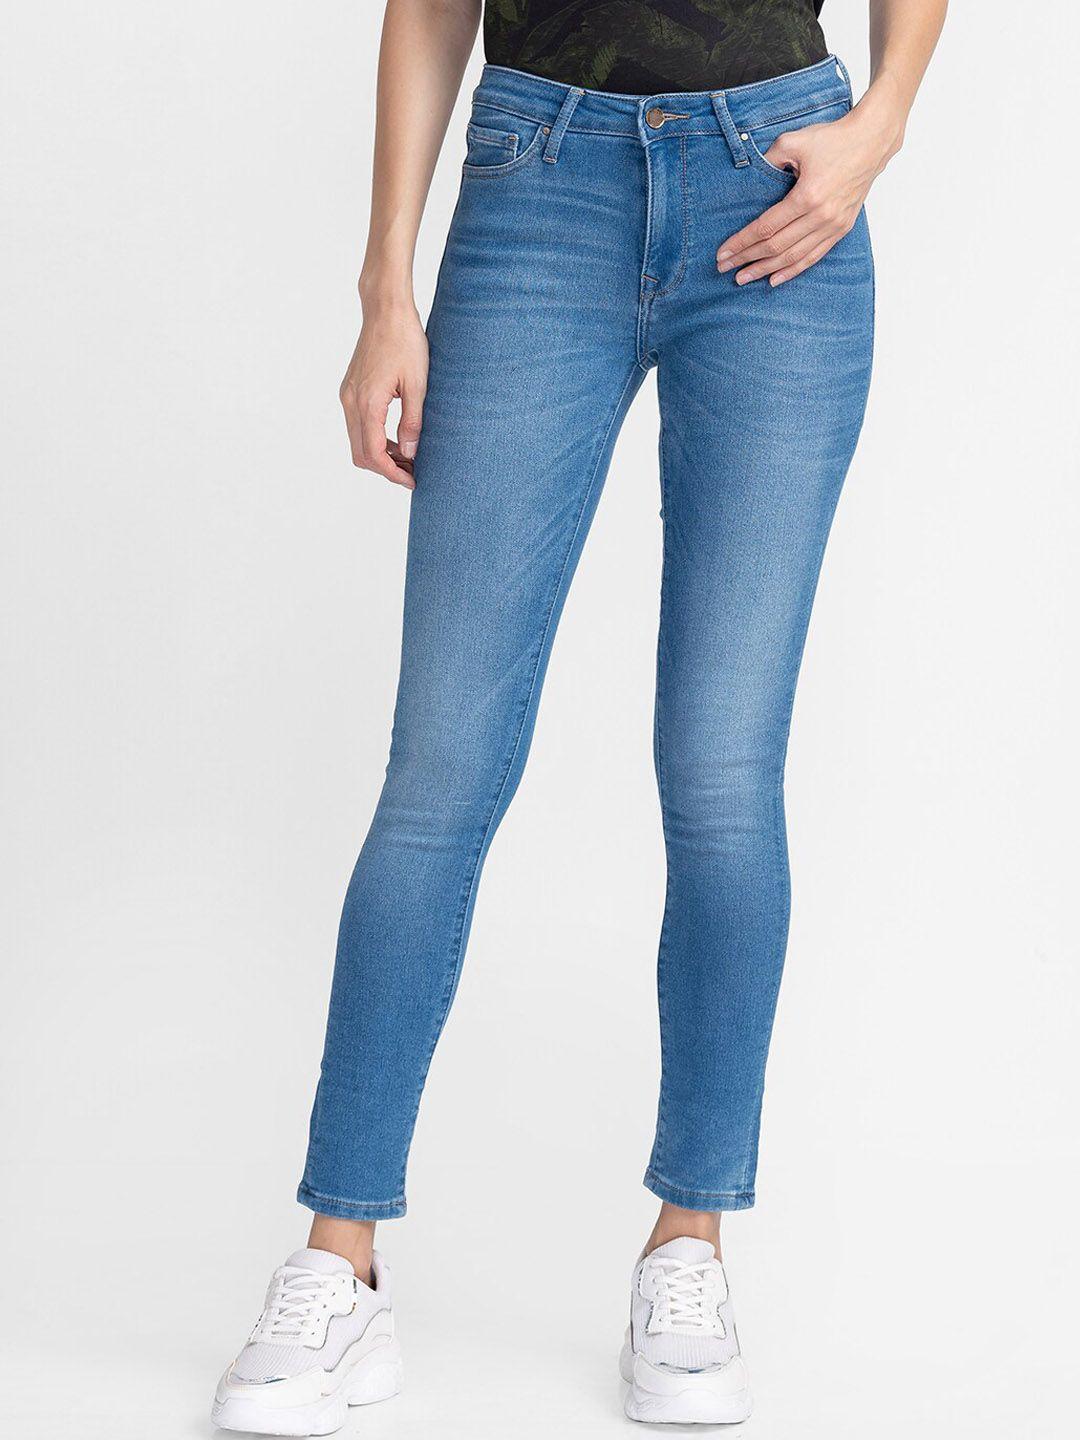 spykar women blue skinny fit light fade jeans